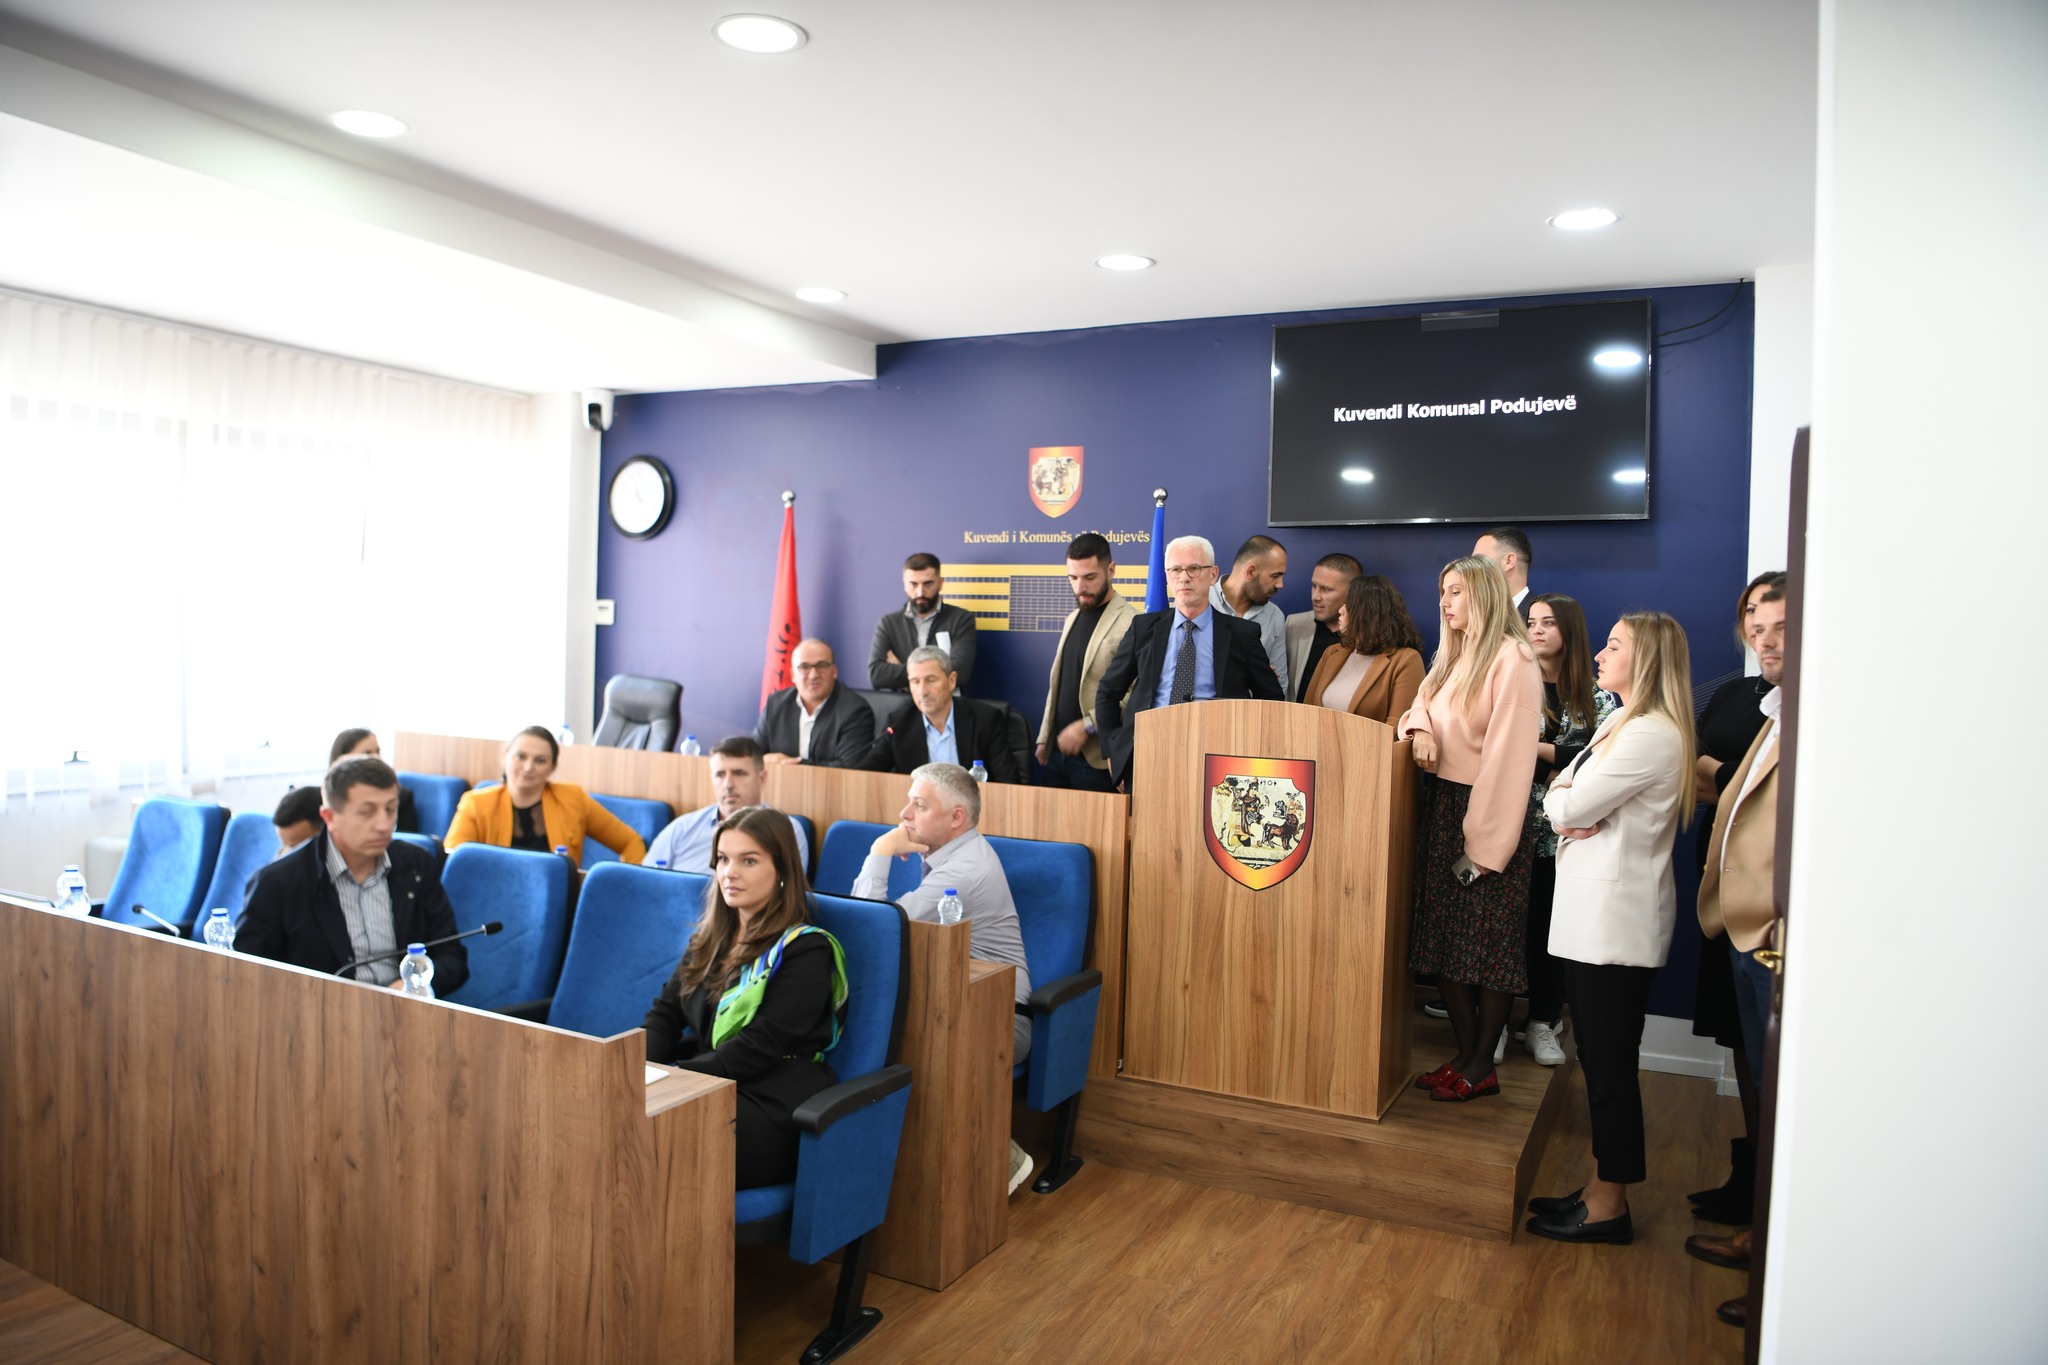  Vazhdon “lluga” në komunën e Podujevës, shtyhet seanca e Kuvendit Komunal për të hënën |PAMJE